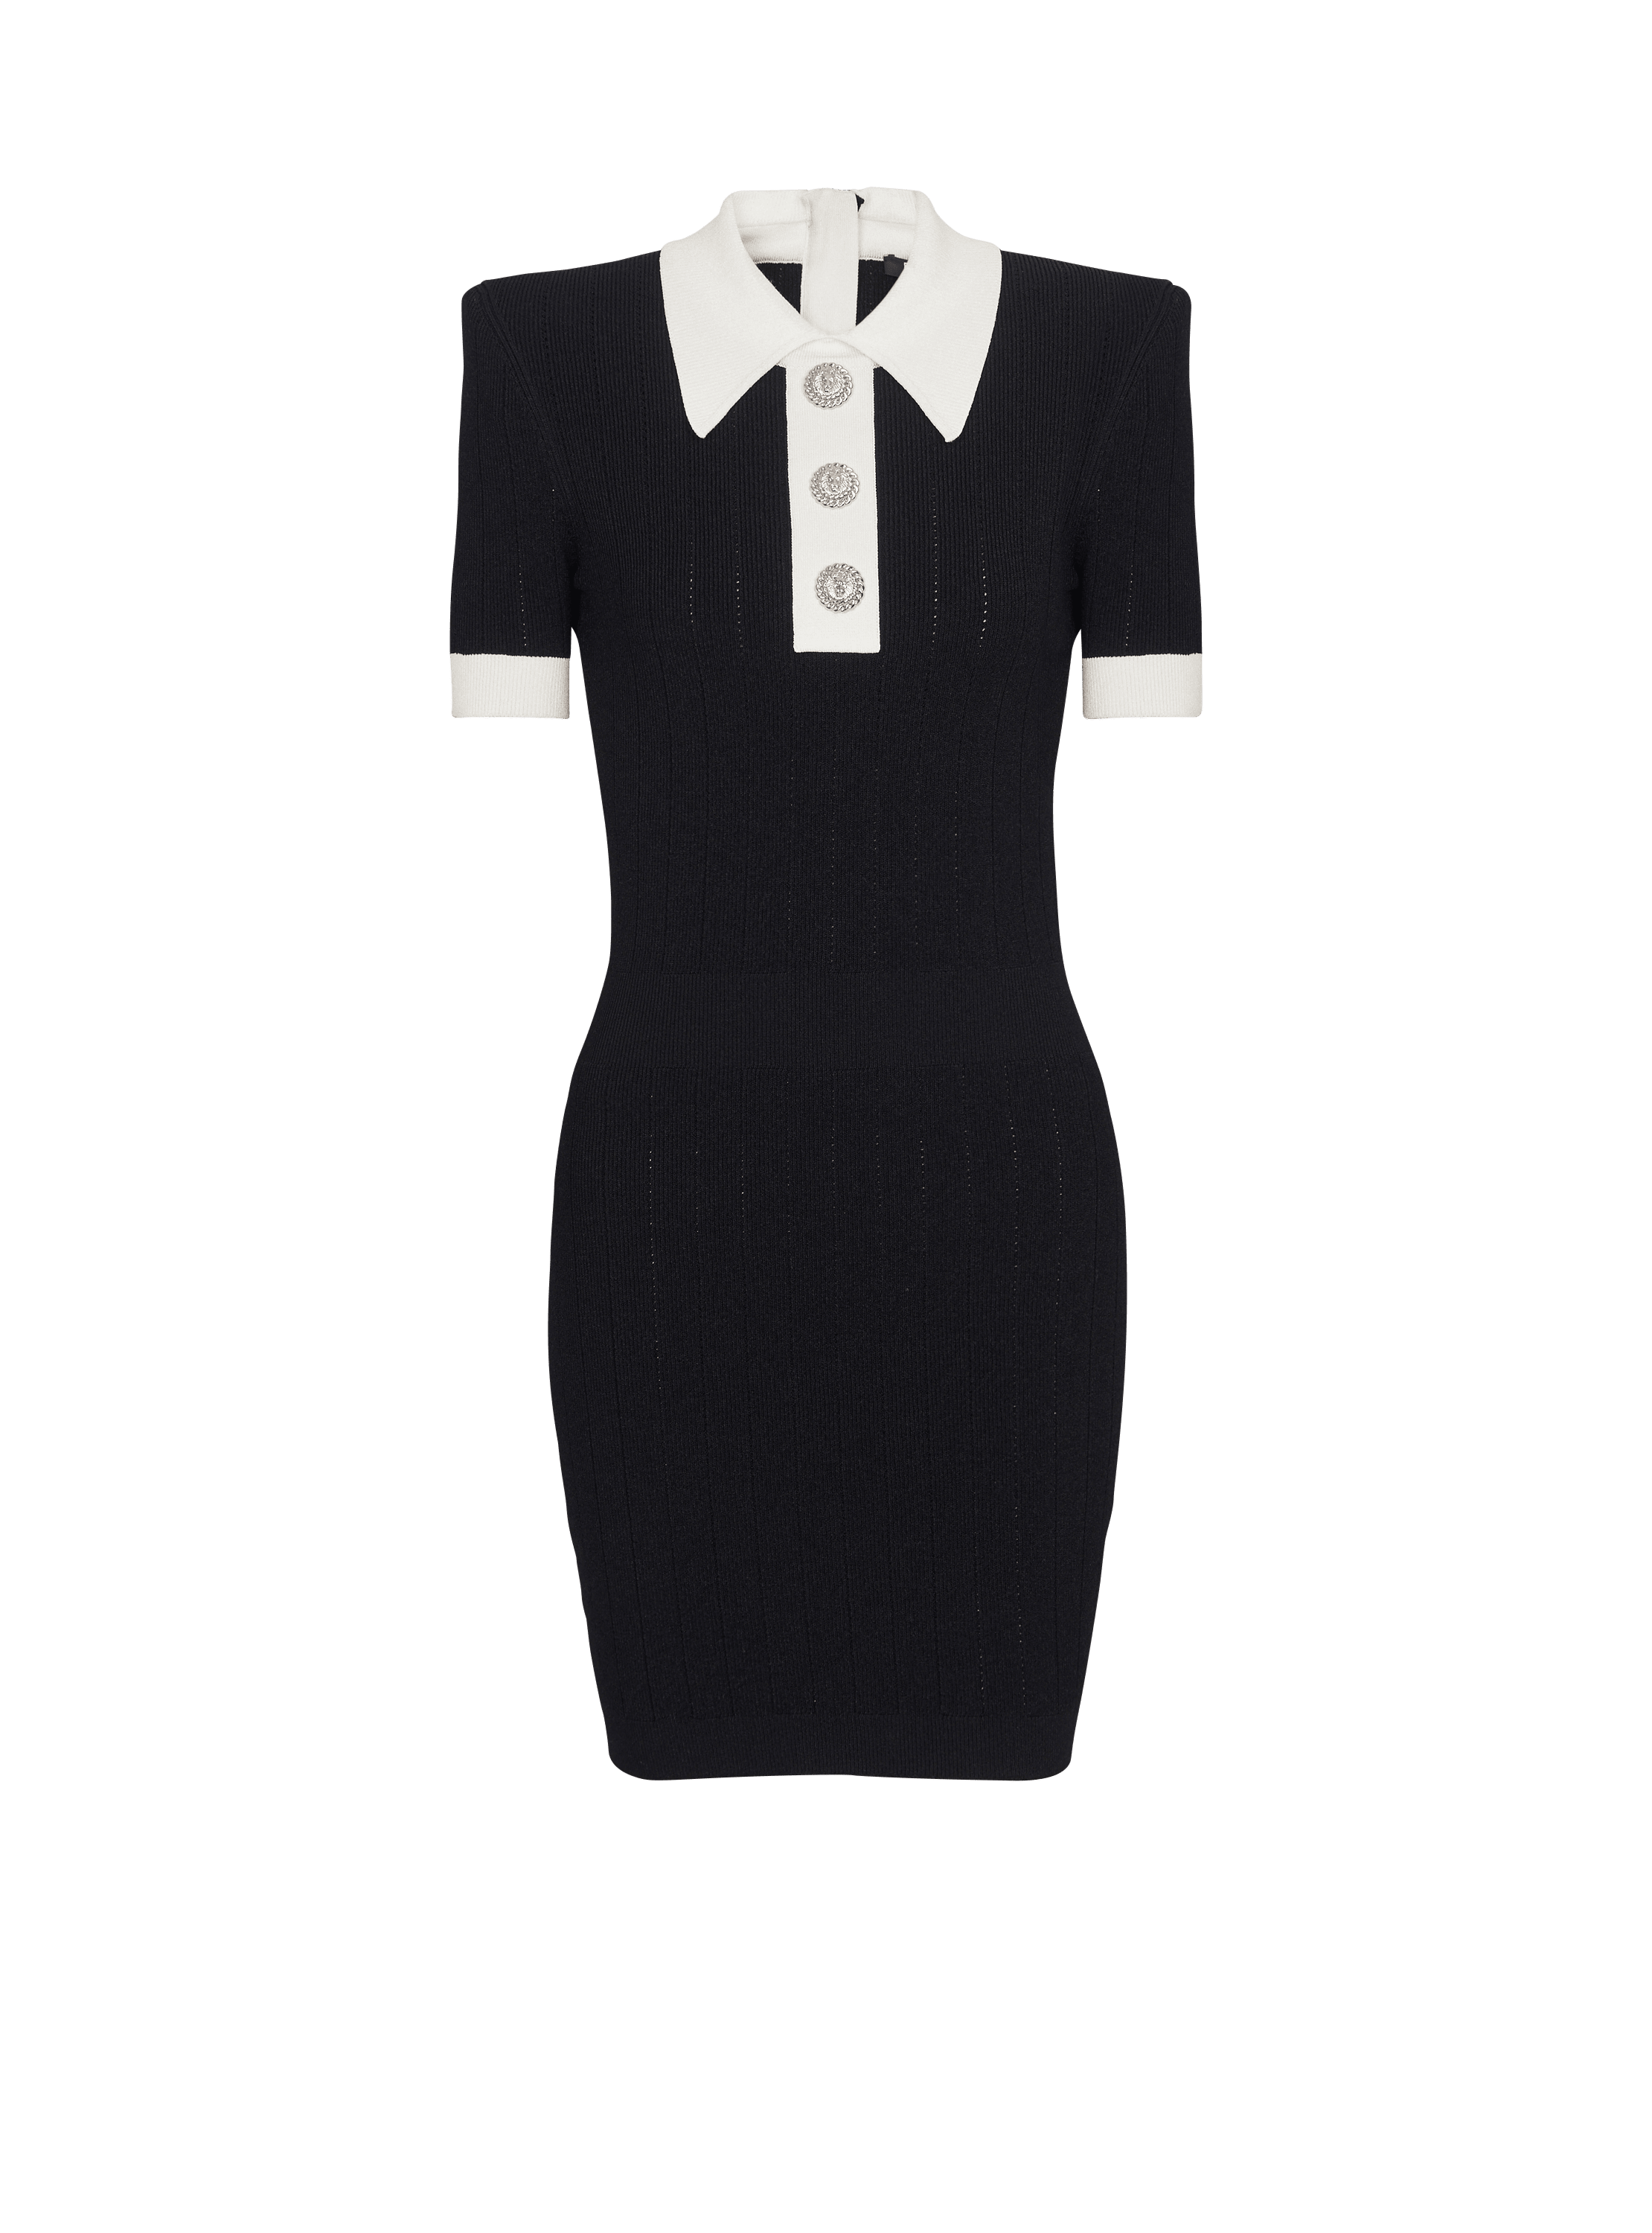 Ribbed knit polo dress